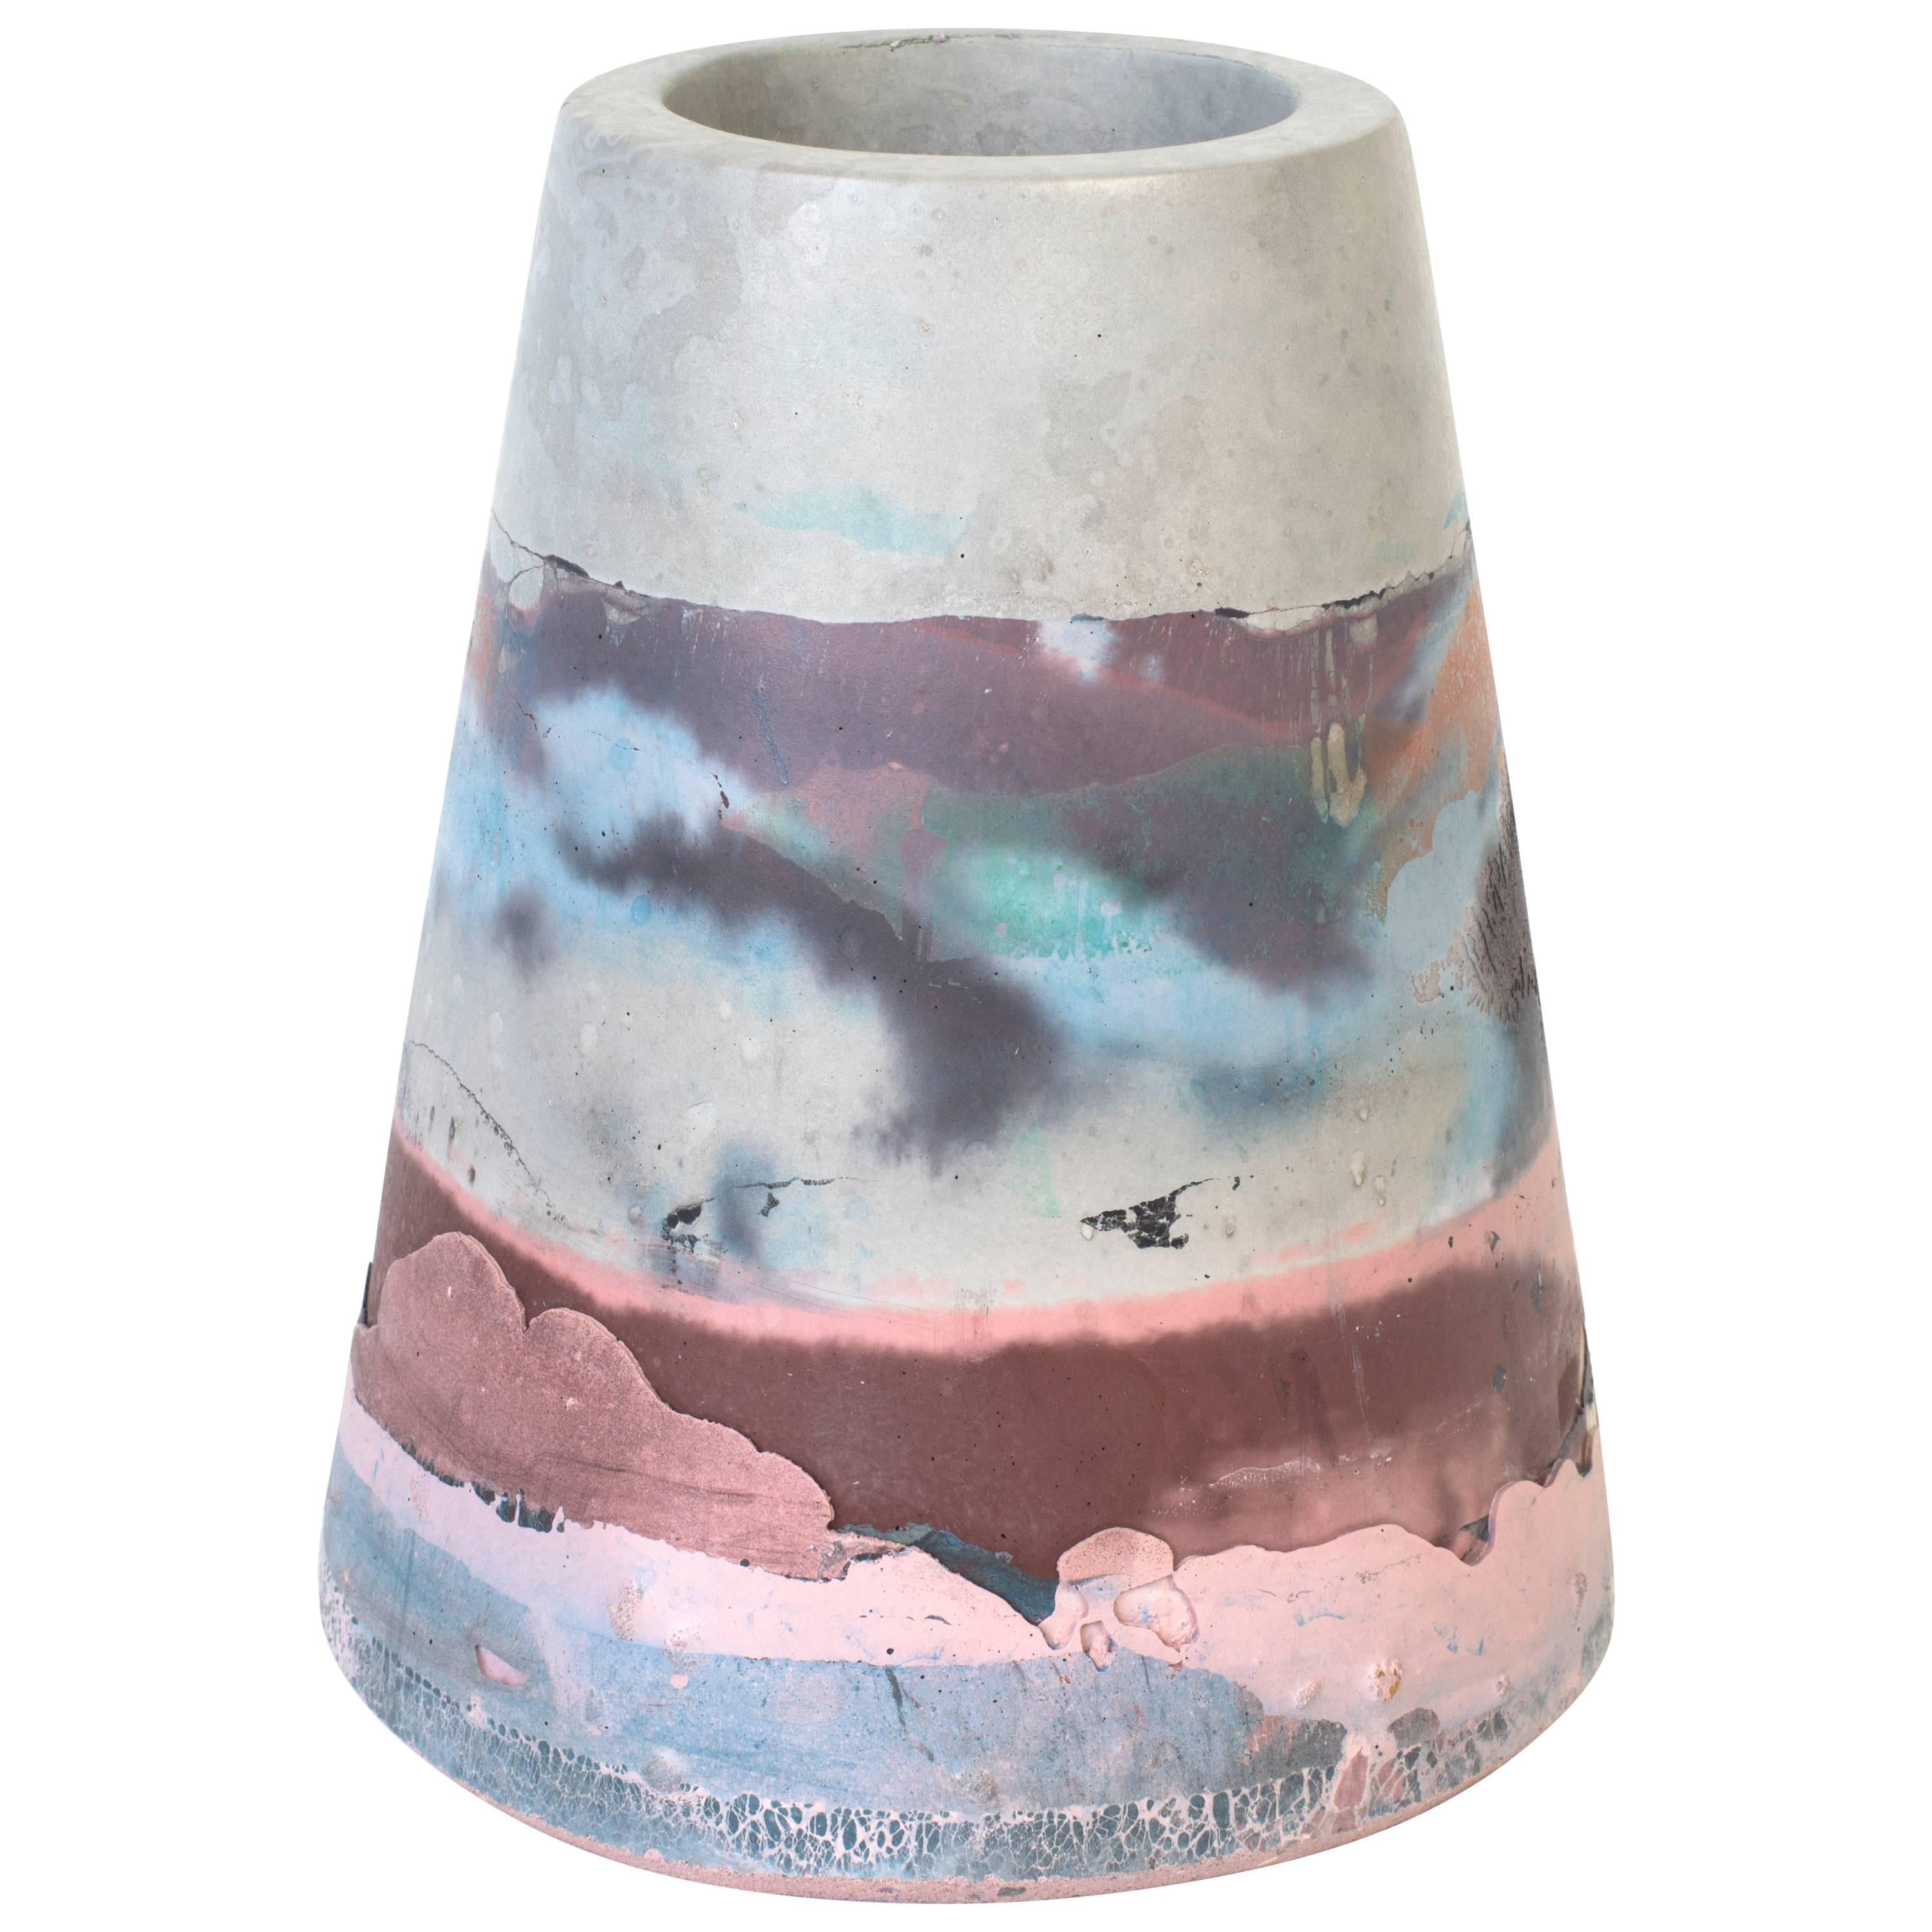 Vesta Concrete Vase in Detritus Pattern, Handmade Organic Modern Vessel In Stock For Sale